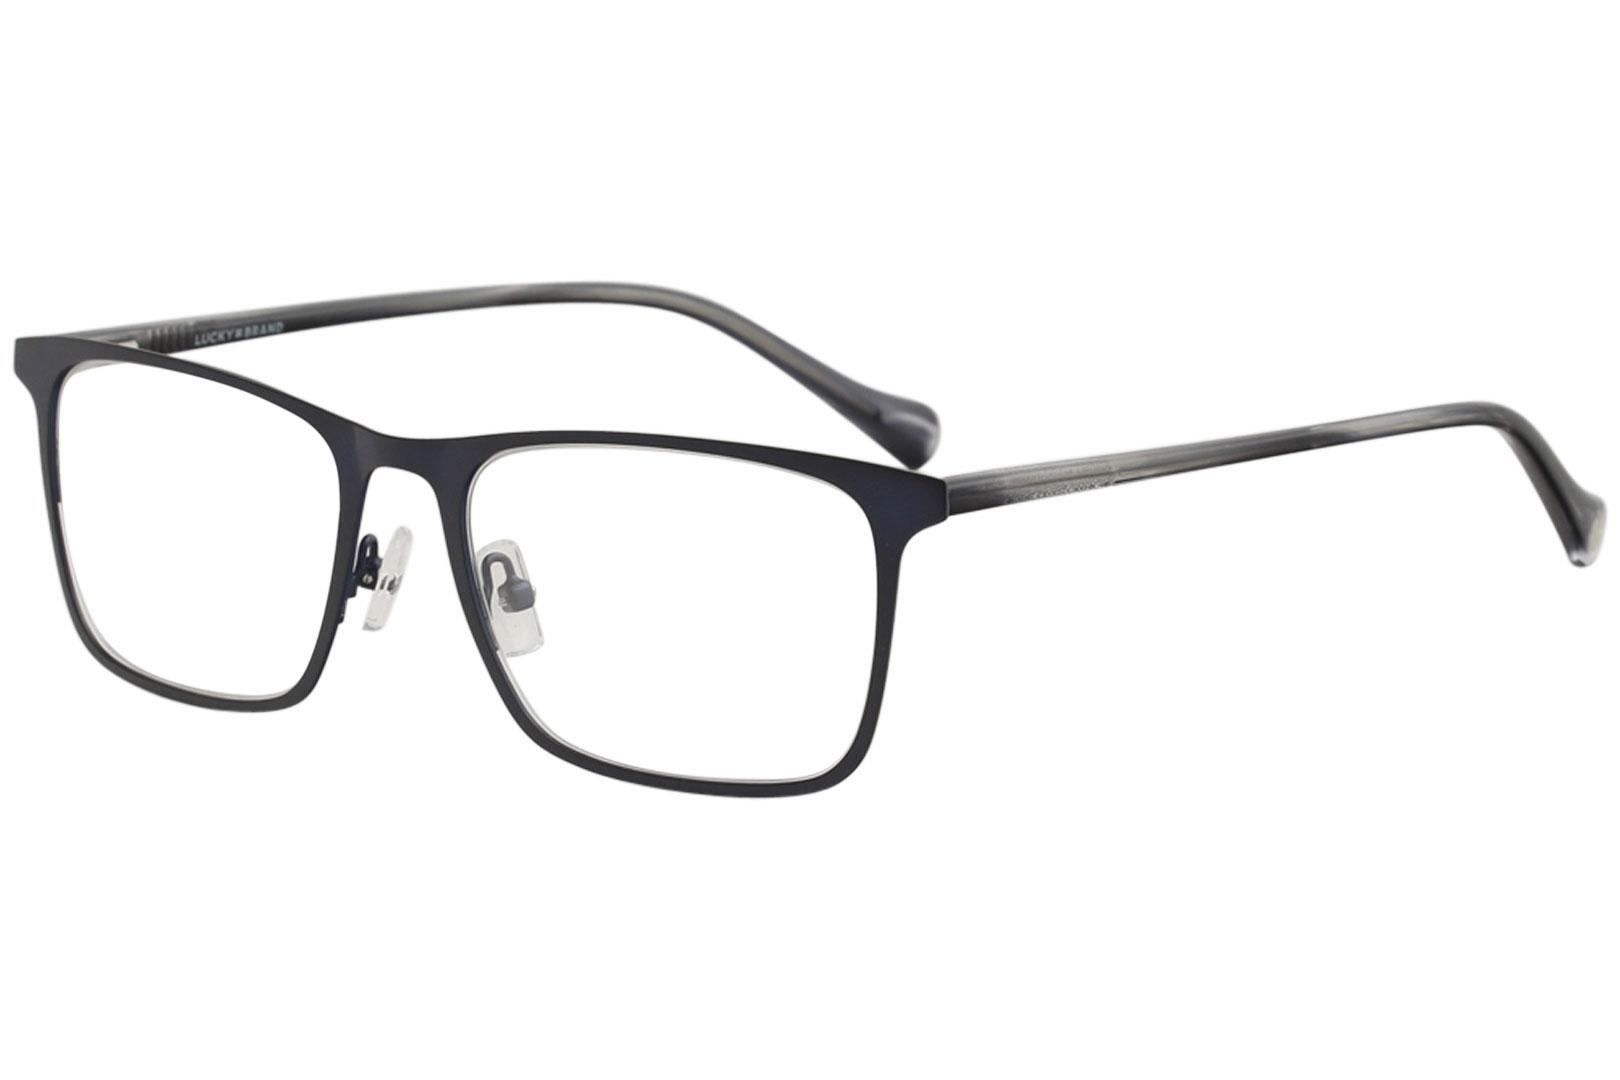 Lucky Brand Men's Eyeglasses D308 D/308 Navy Full Rim Optical Frame 54mm - Navy - Lens 54 Bridge 19 Temple 145mm